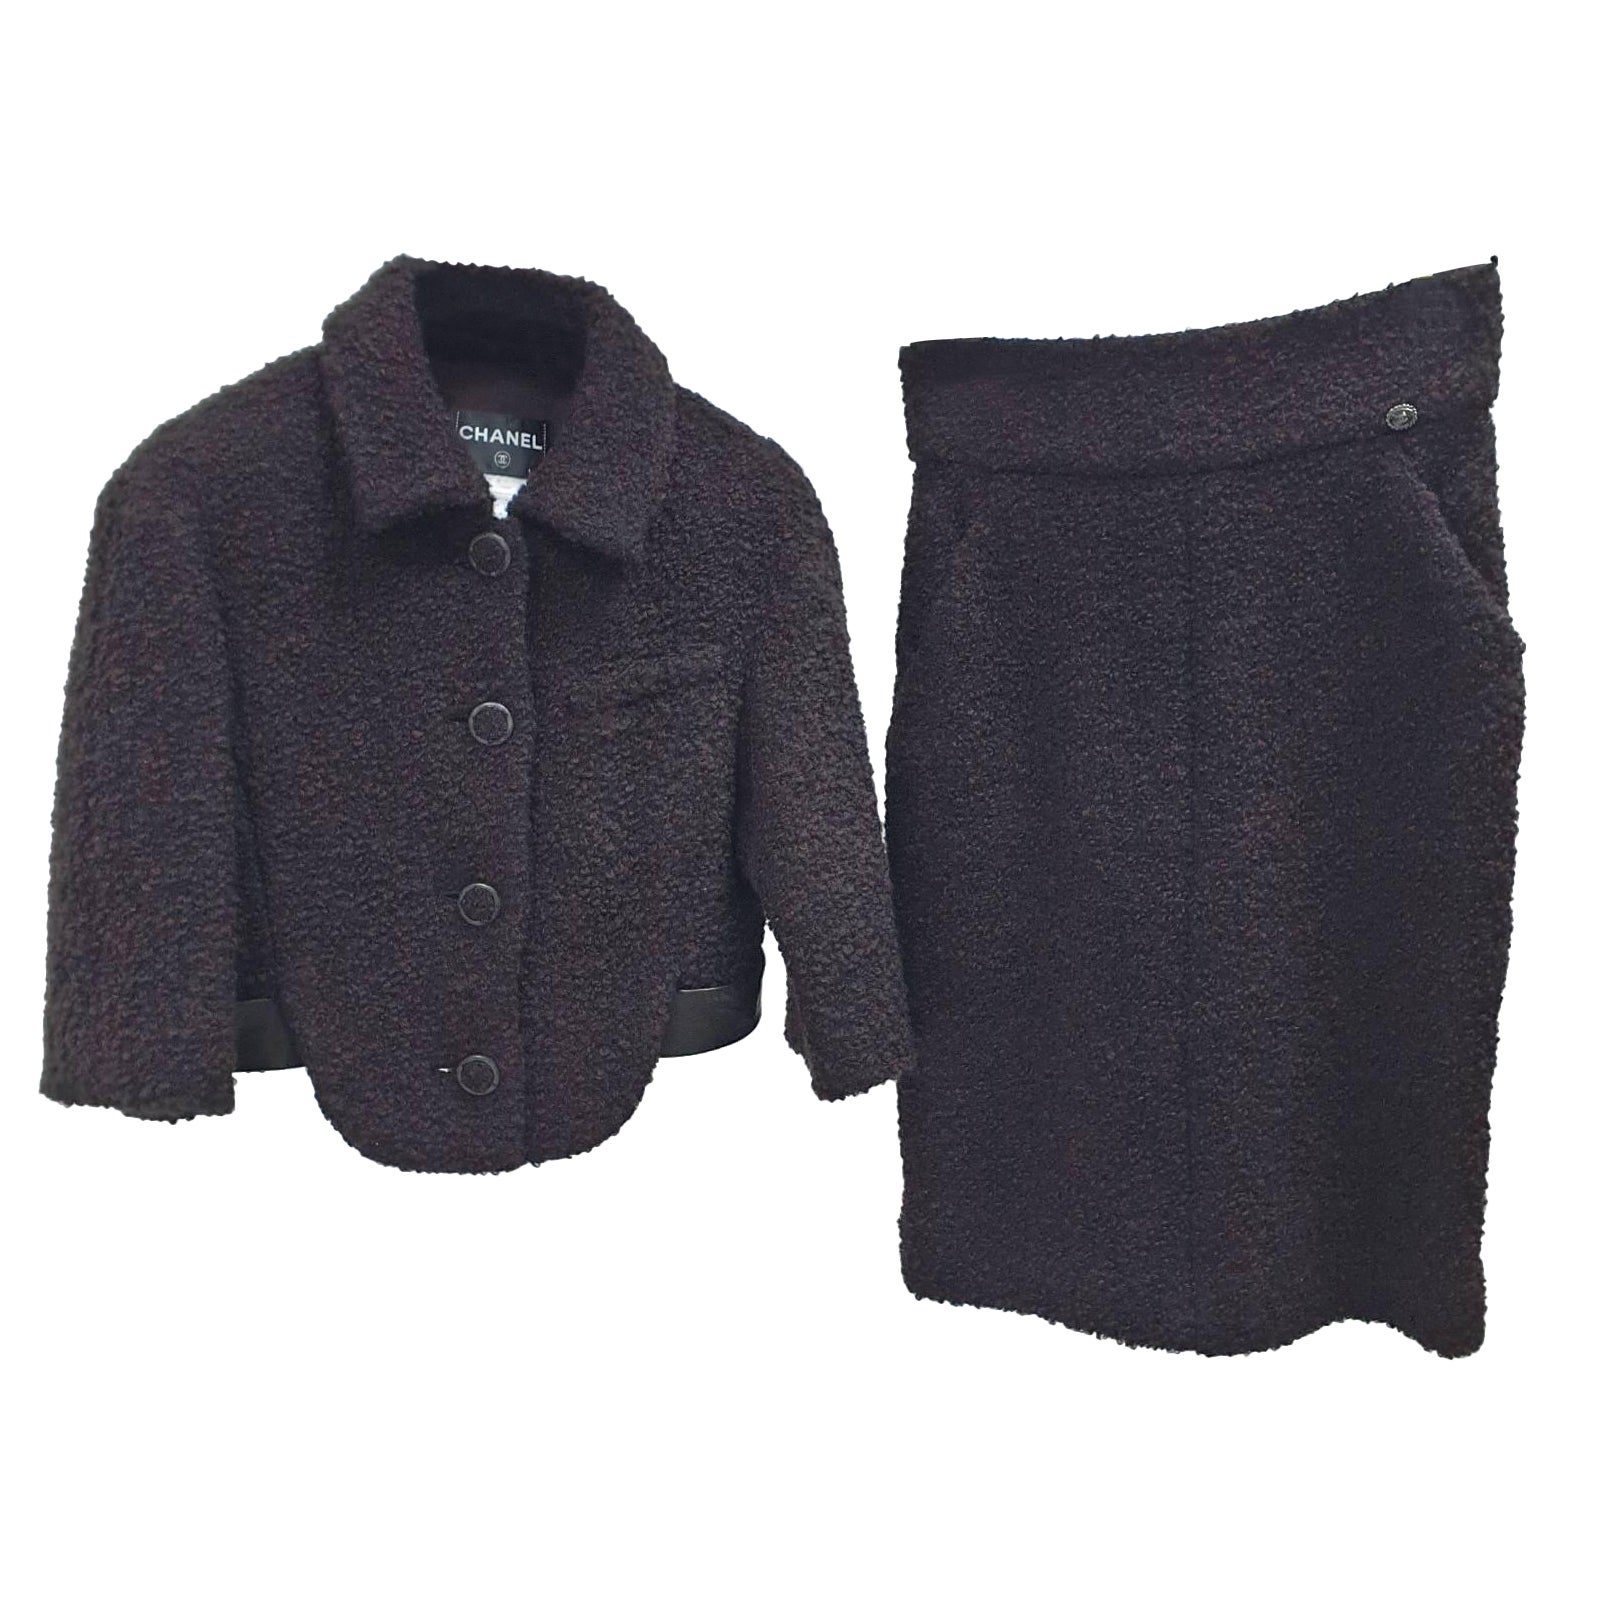 Chanel Black Broun Bouckle Jacket Skirt Suit Set